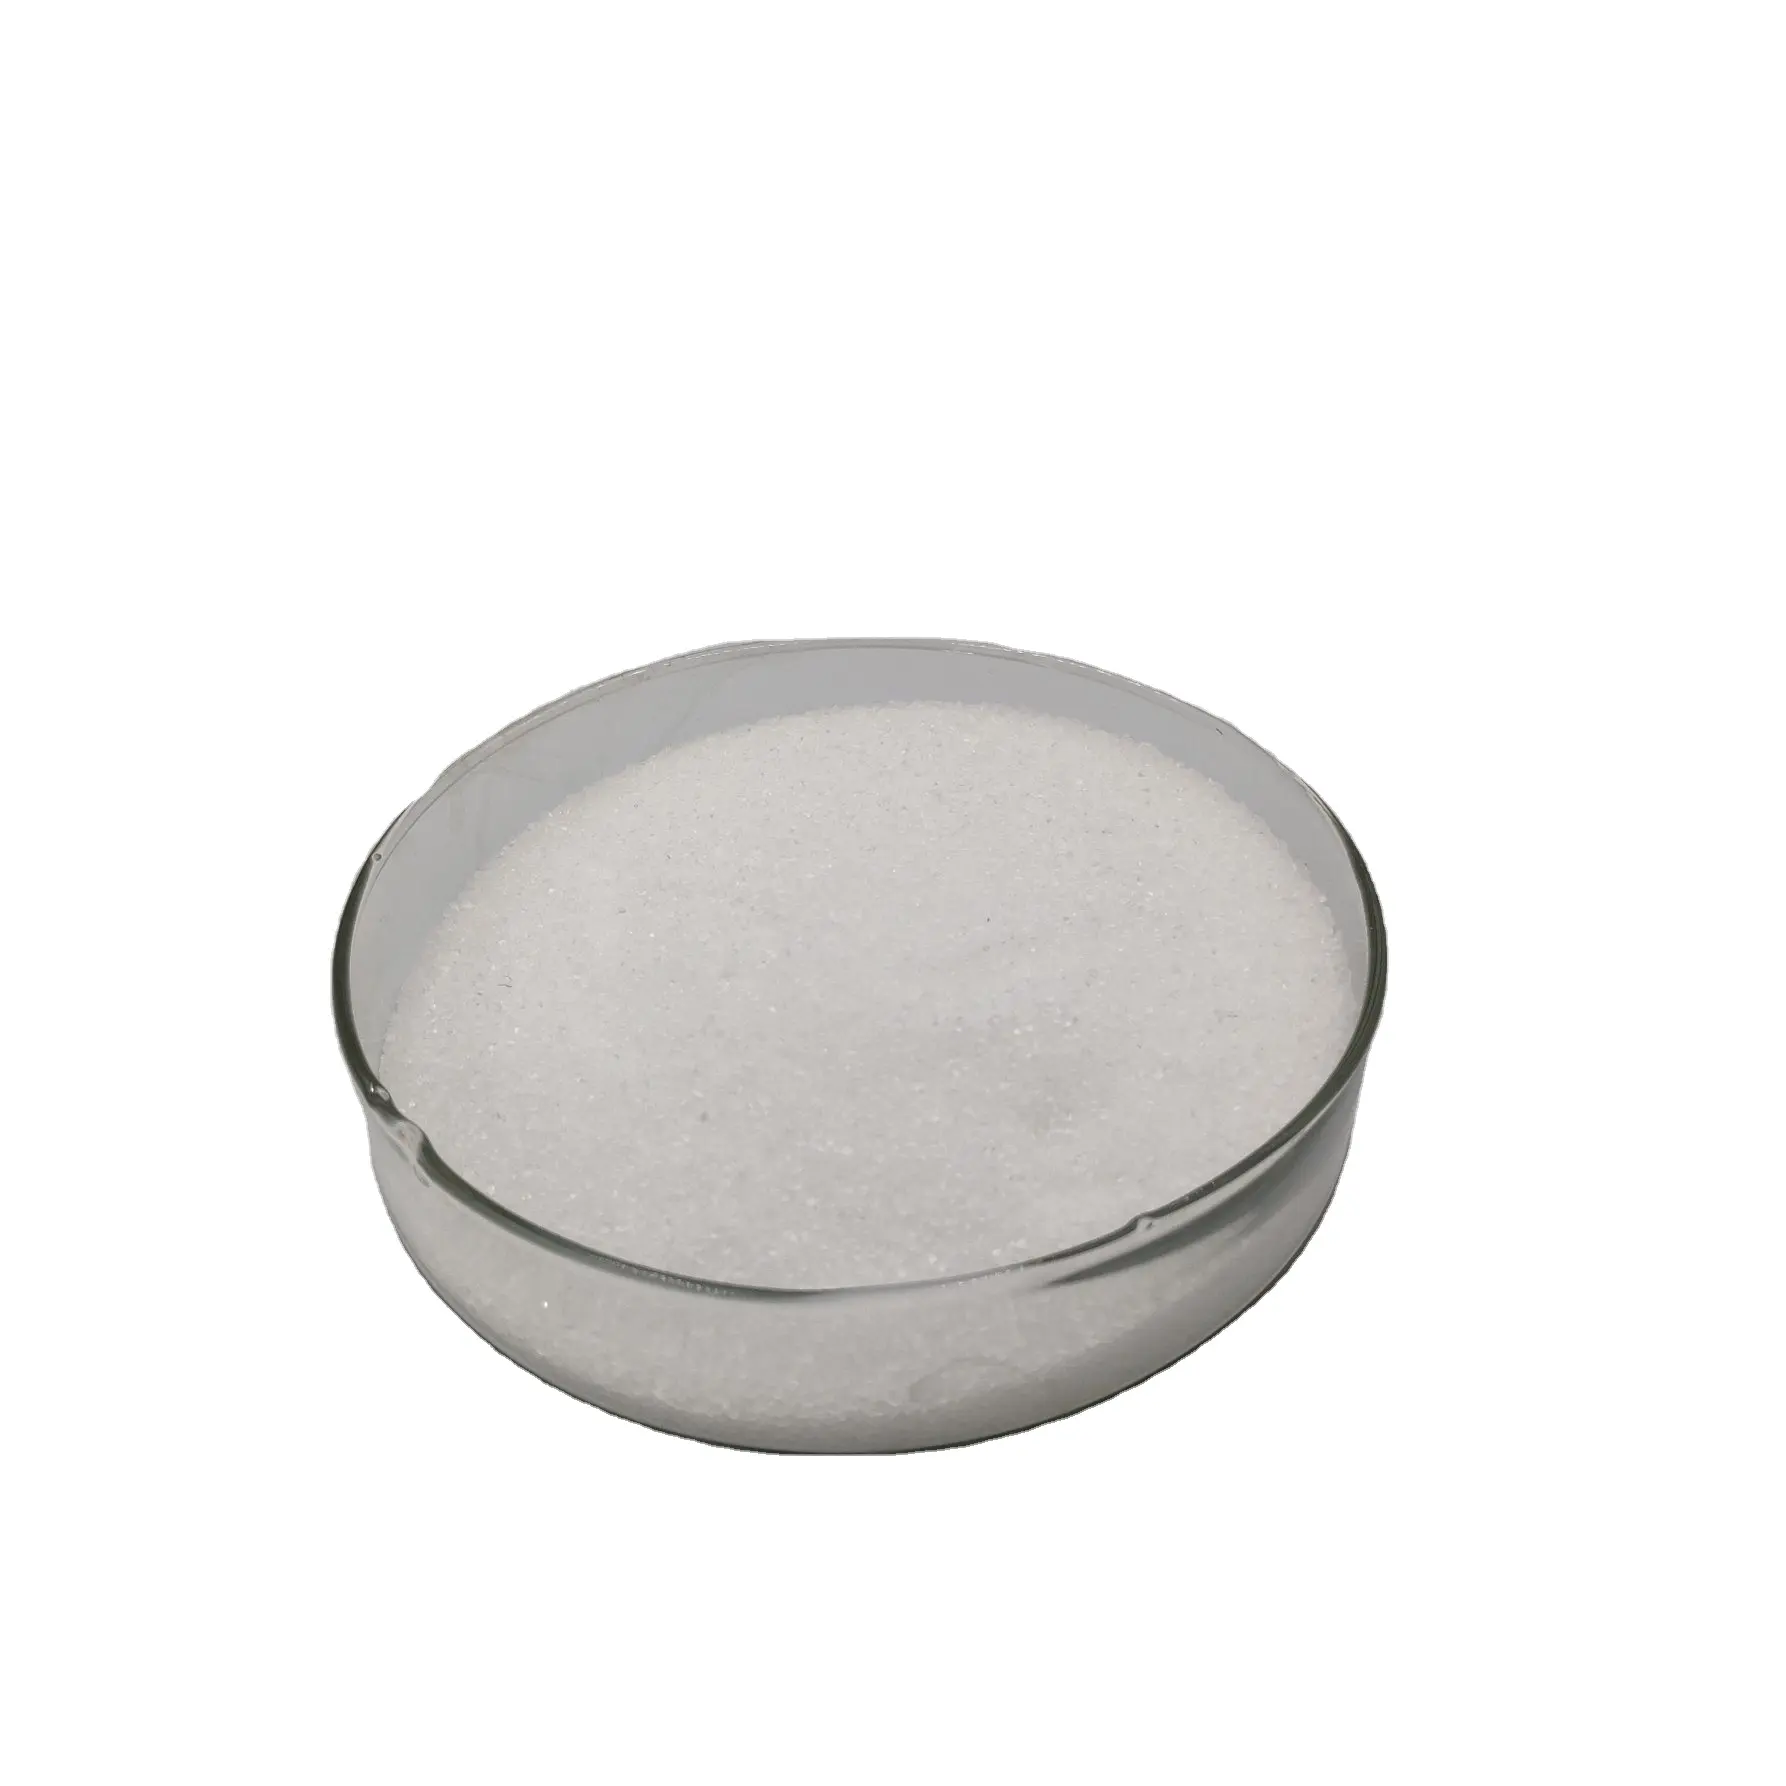 Оптовая продажа D-аллюлоза высокой степени очистки CAS 551-68-8 аллюлозные подсластители D- psicose